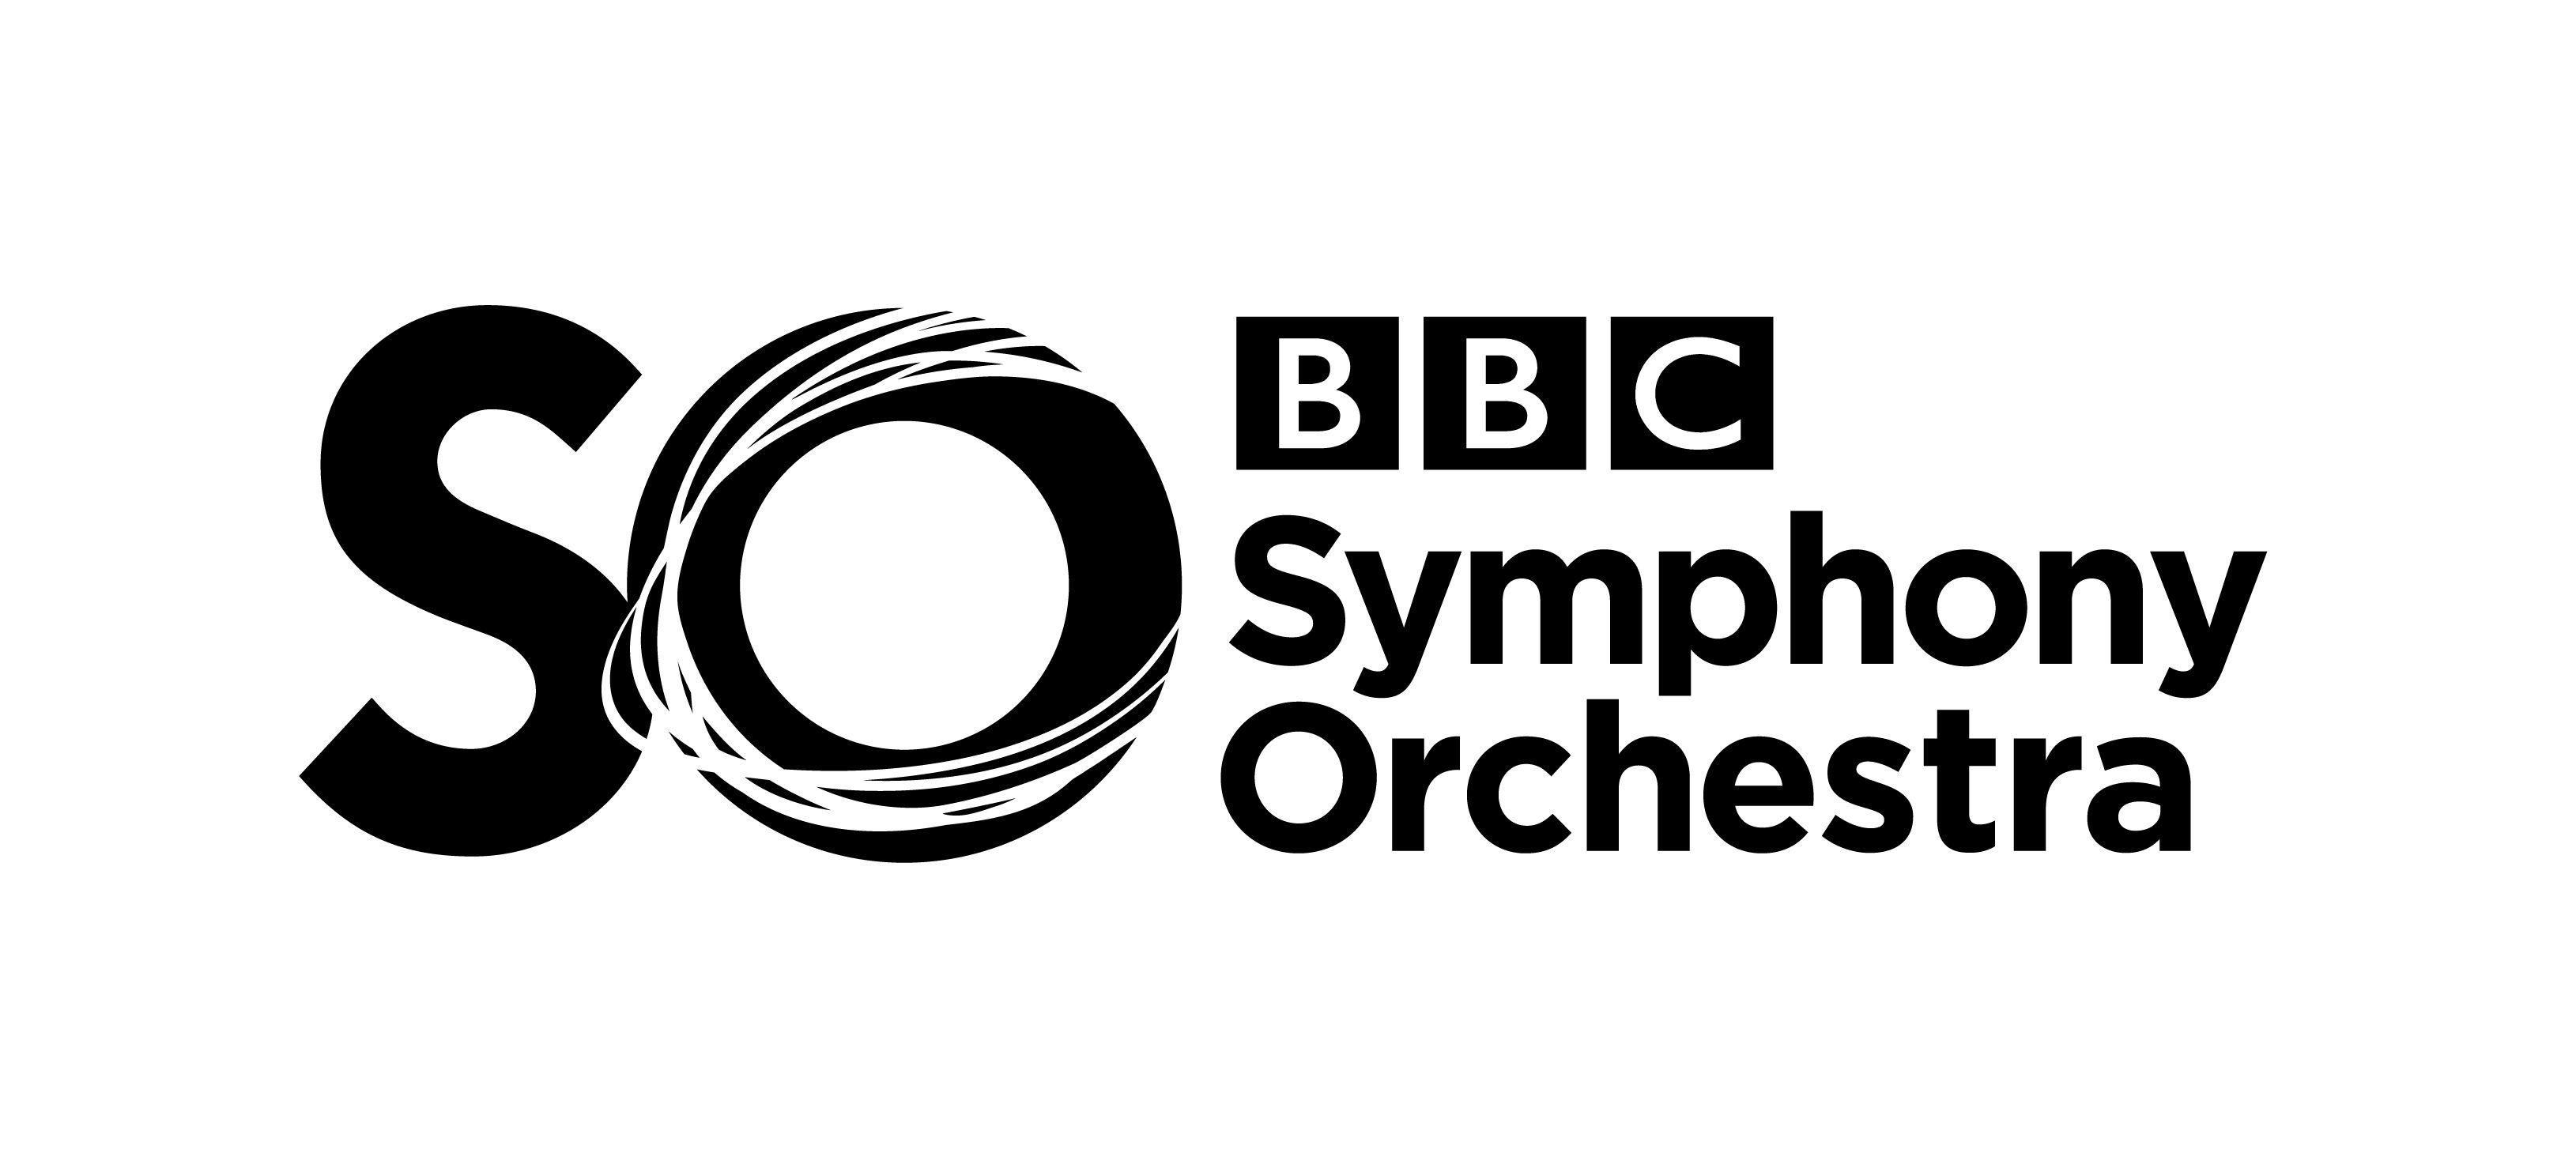 Symphony Logo - BBC Symphony Orchestra